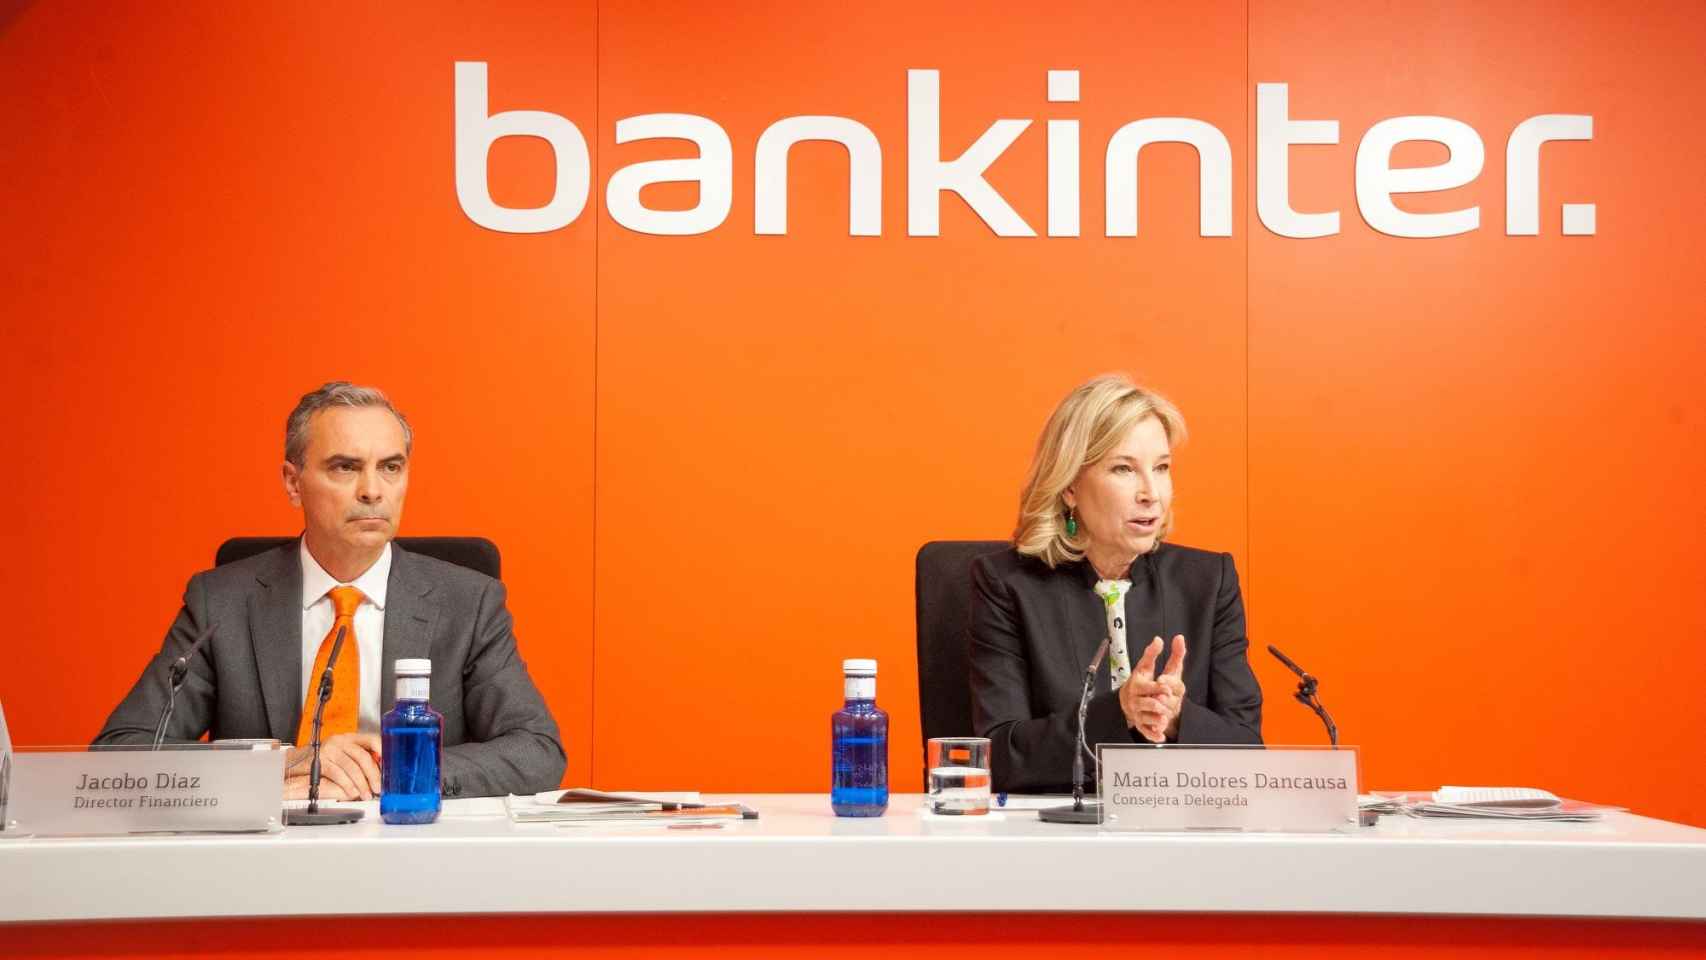 Dolores Dancausa, CEO de Bankinter, está en contra de abrir los bancos por las tardes. En la imagen, junto a Jacobo Díaz, nuevo director financiero